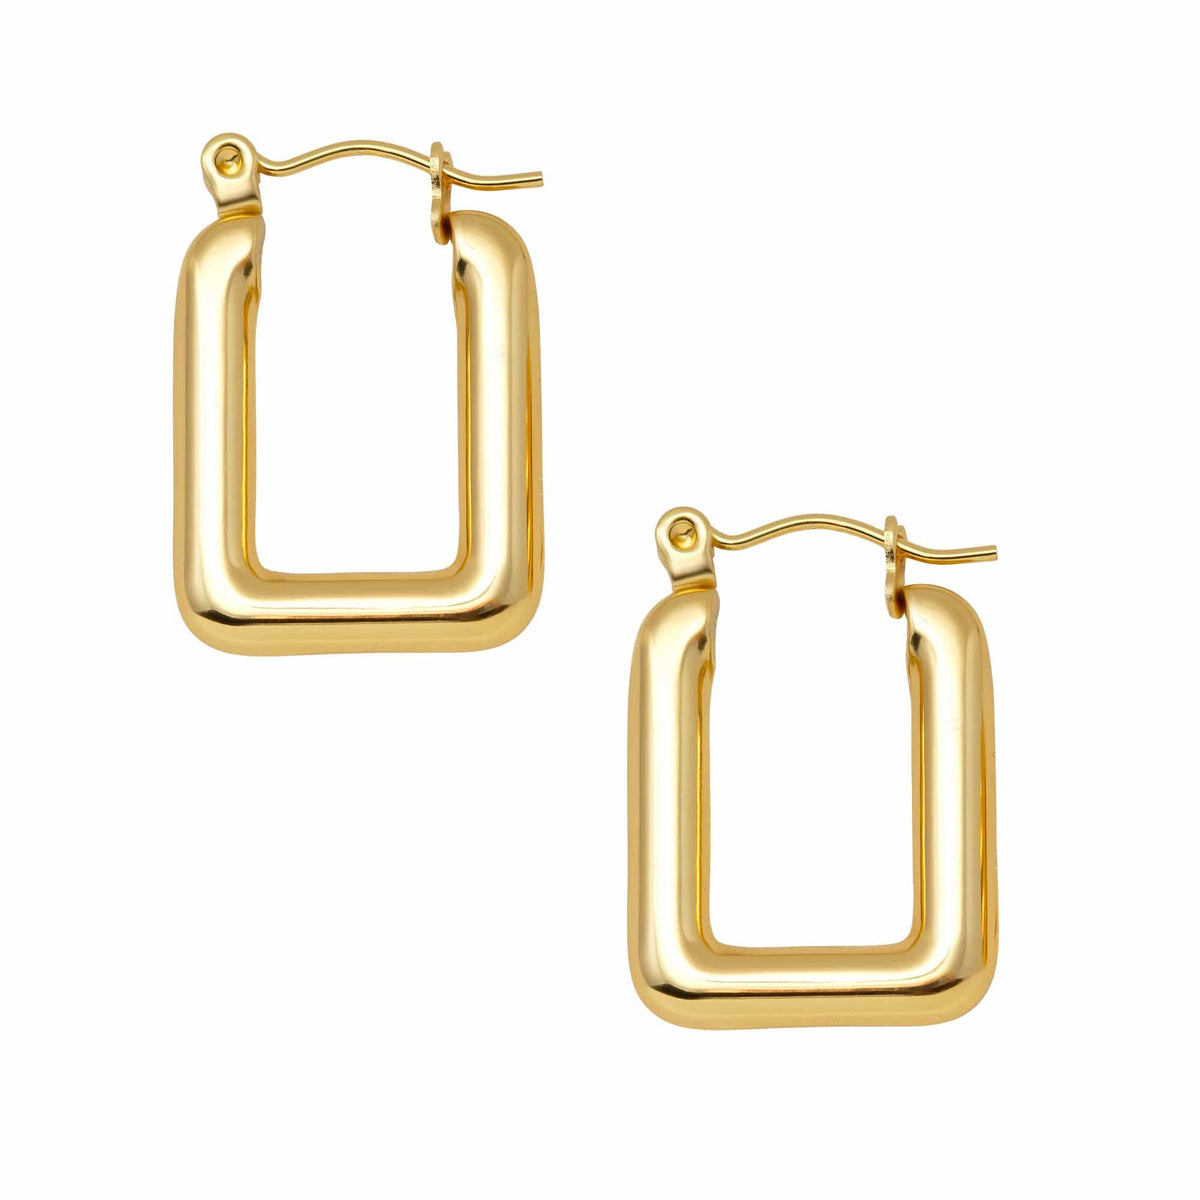 BohoMoon Stainless Steel Silhouette Hoop Earrings Gold